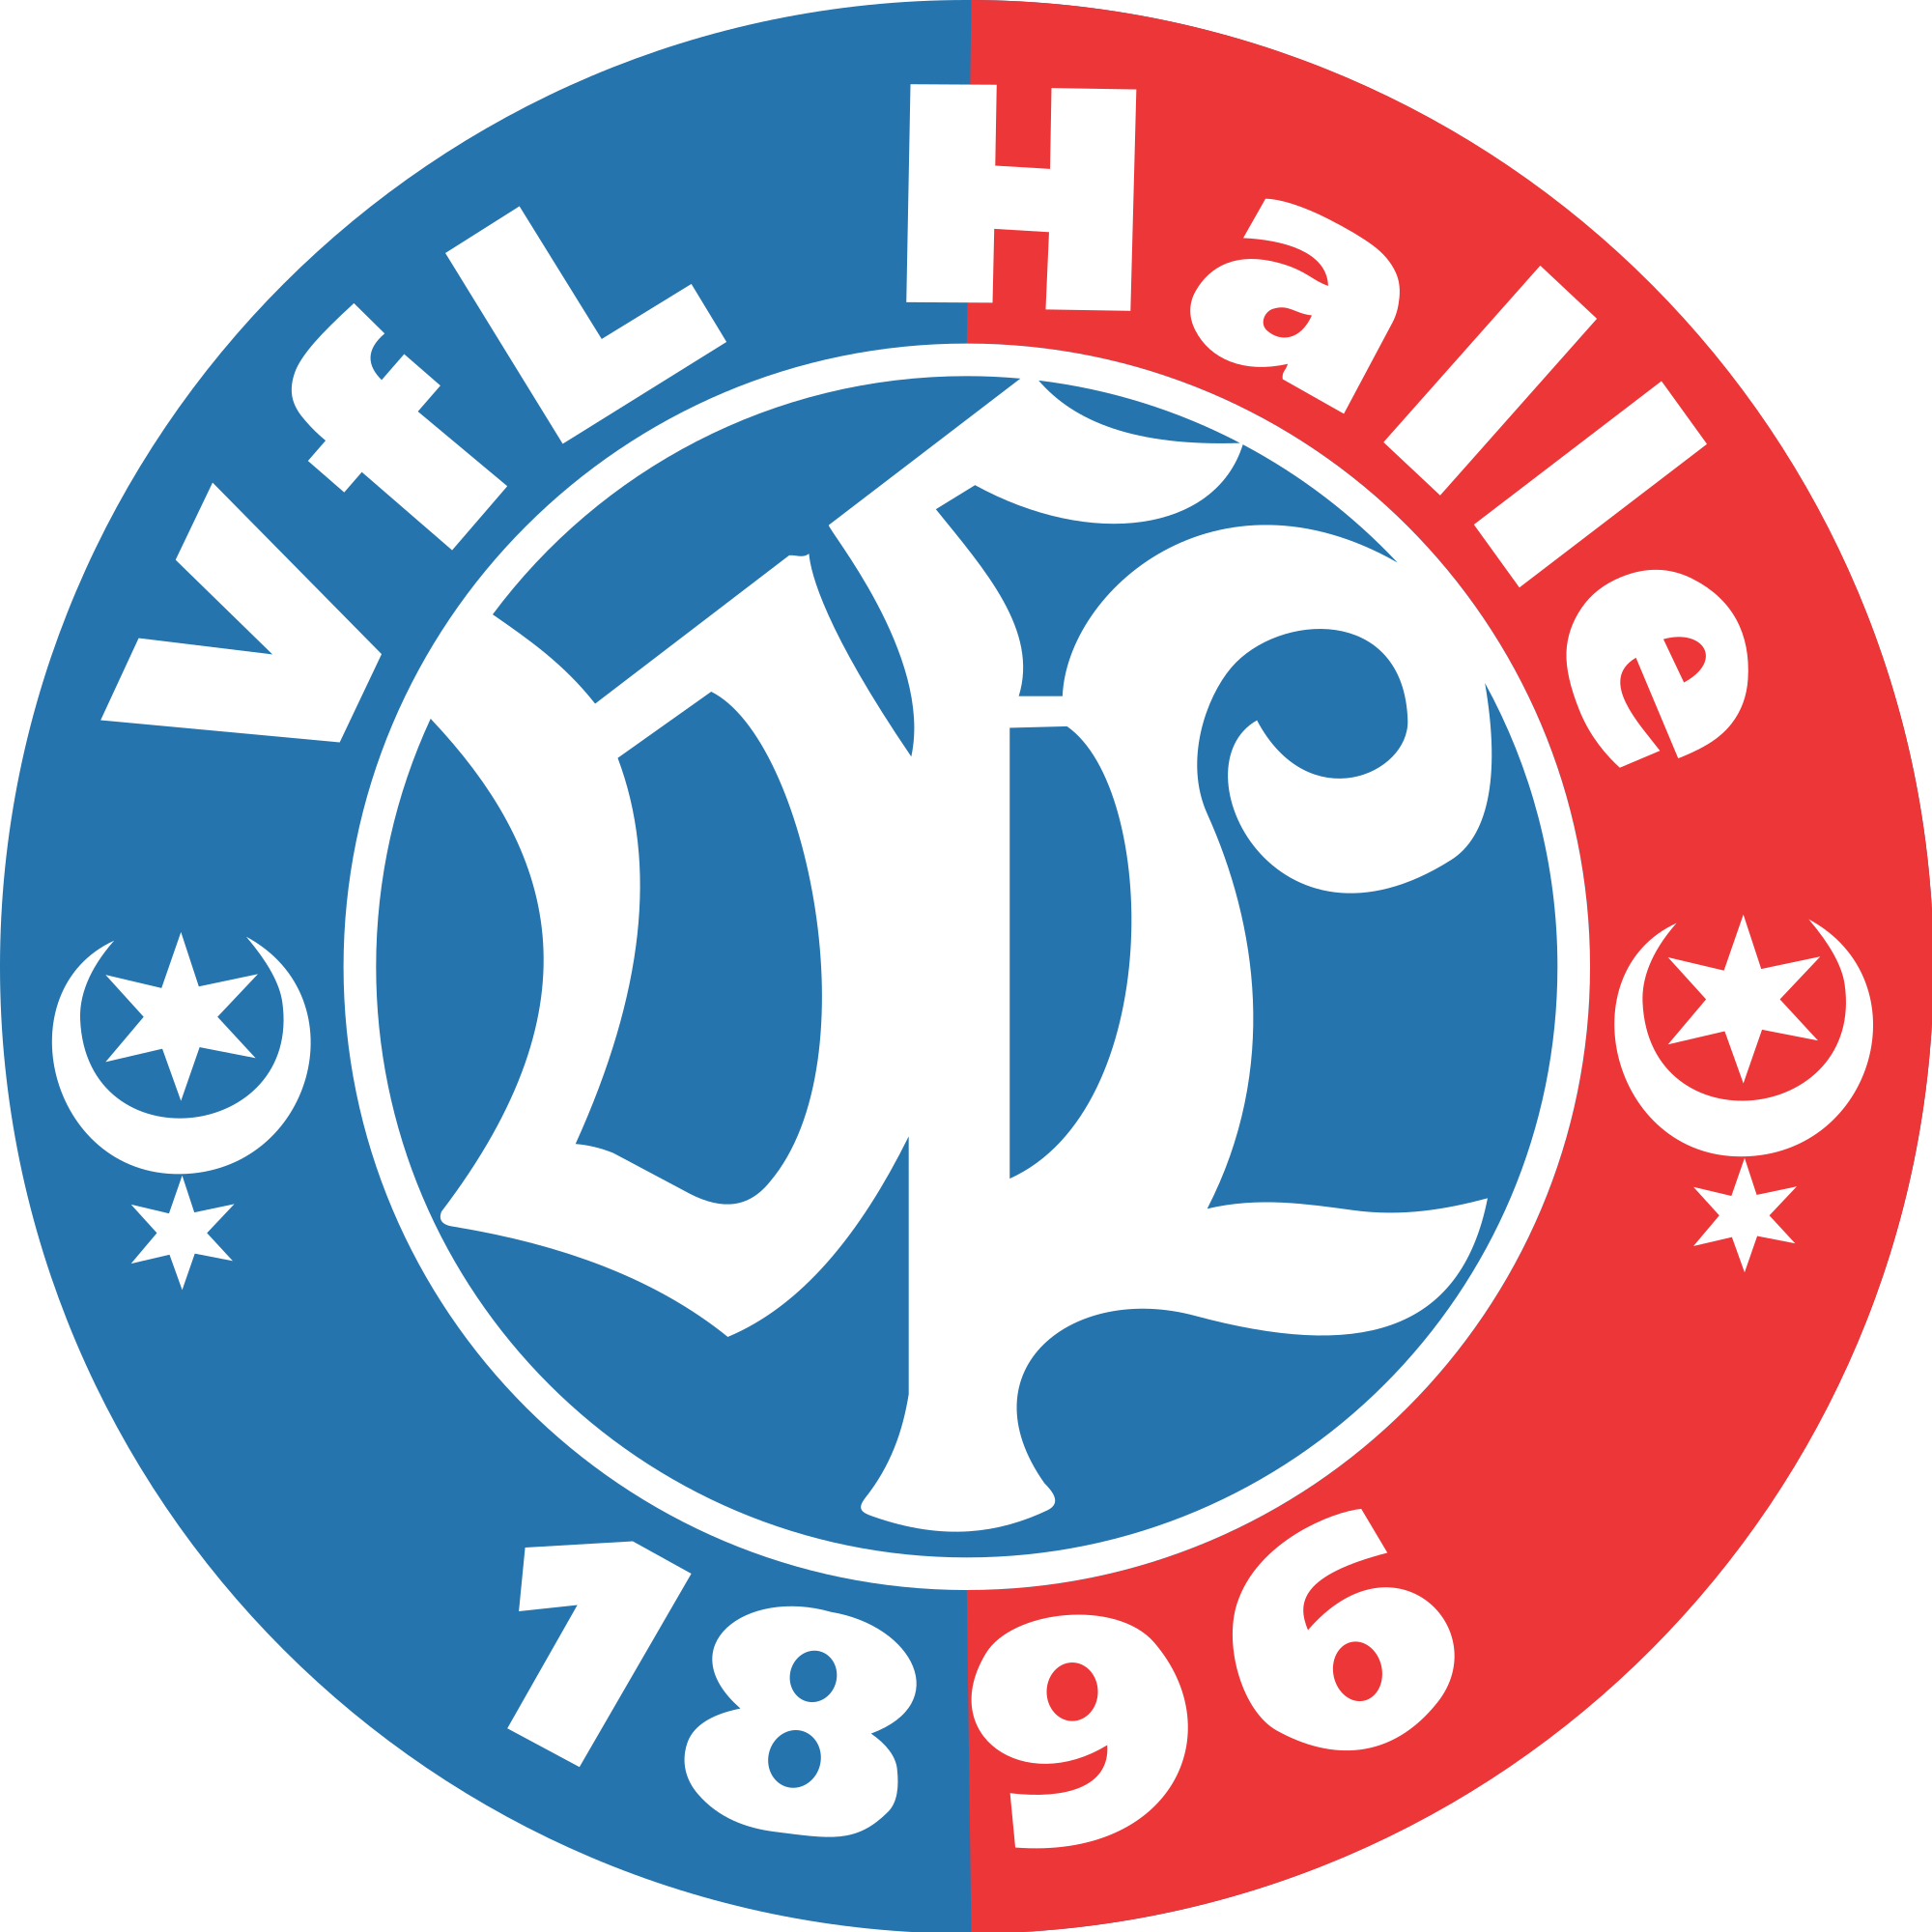 VfL Halle logo